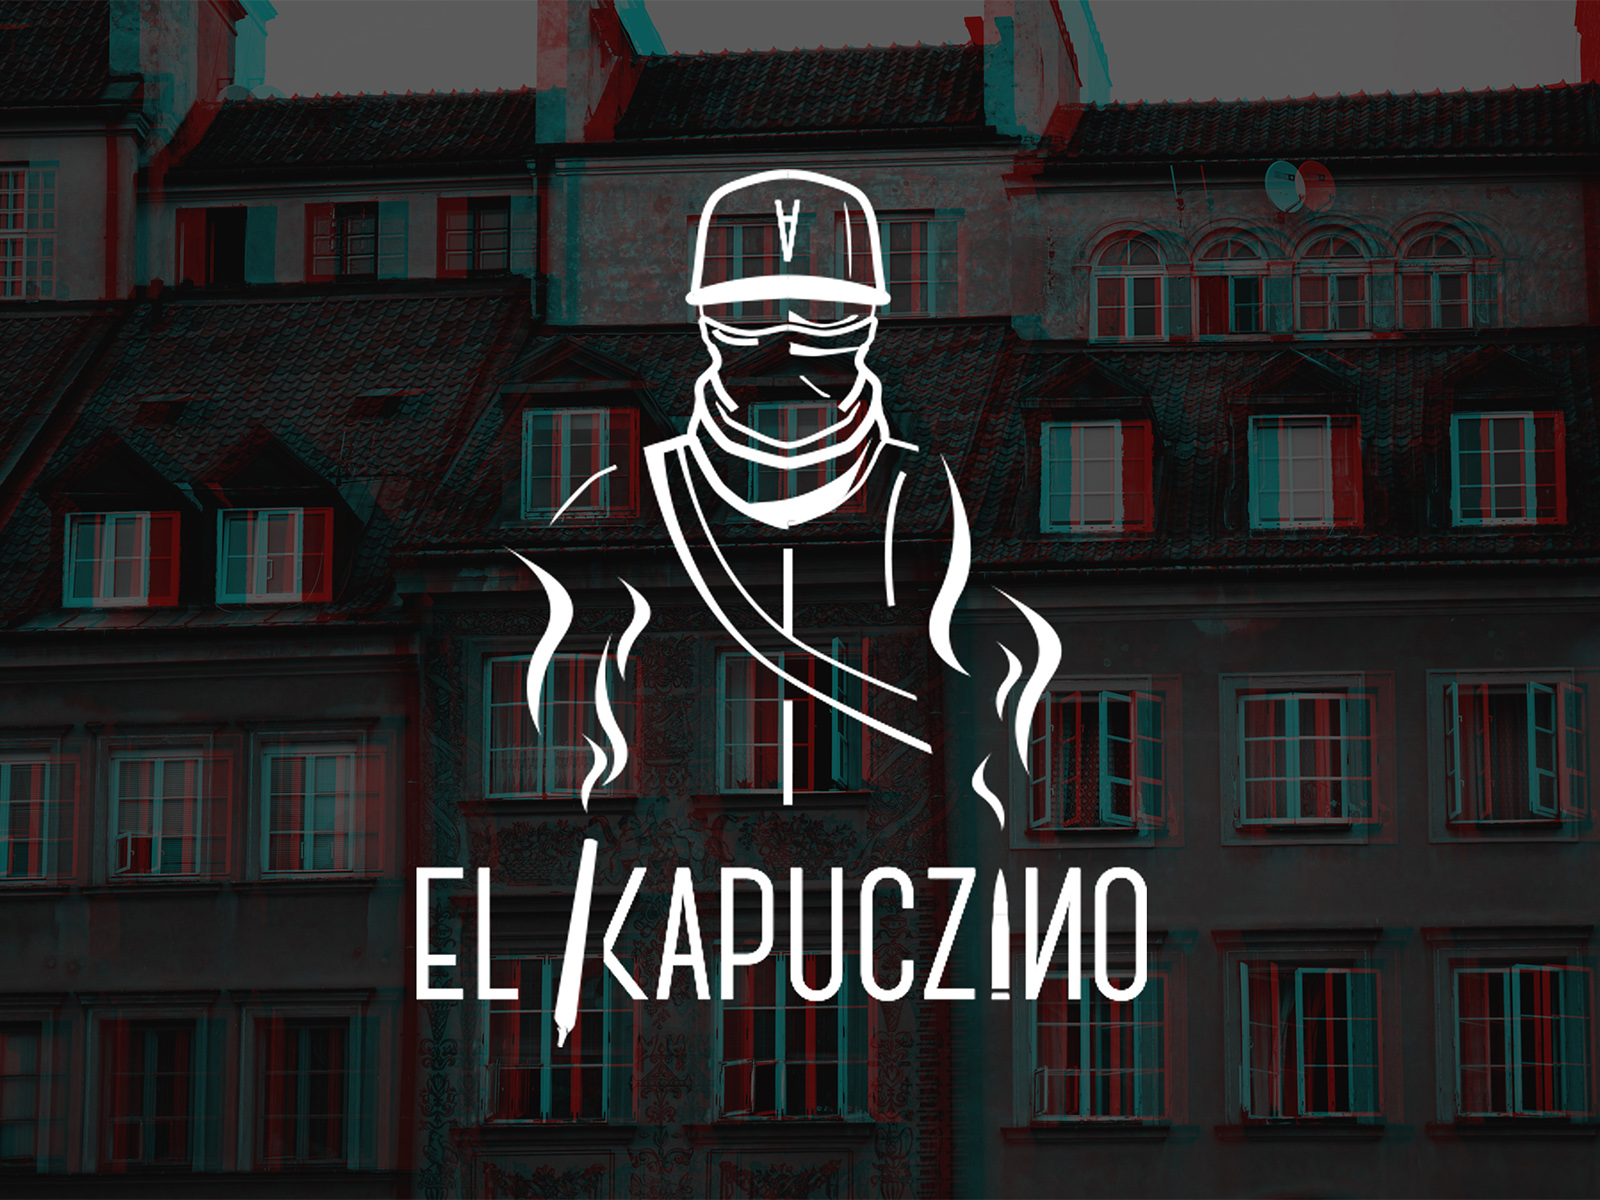 El Kapuczino